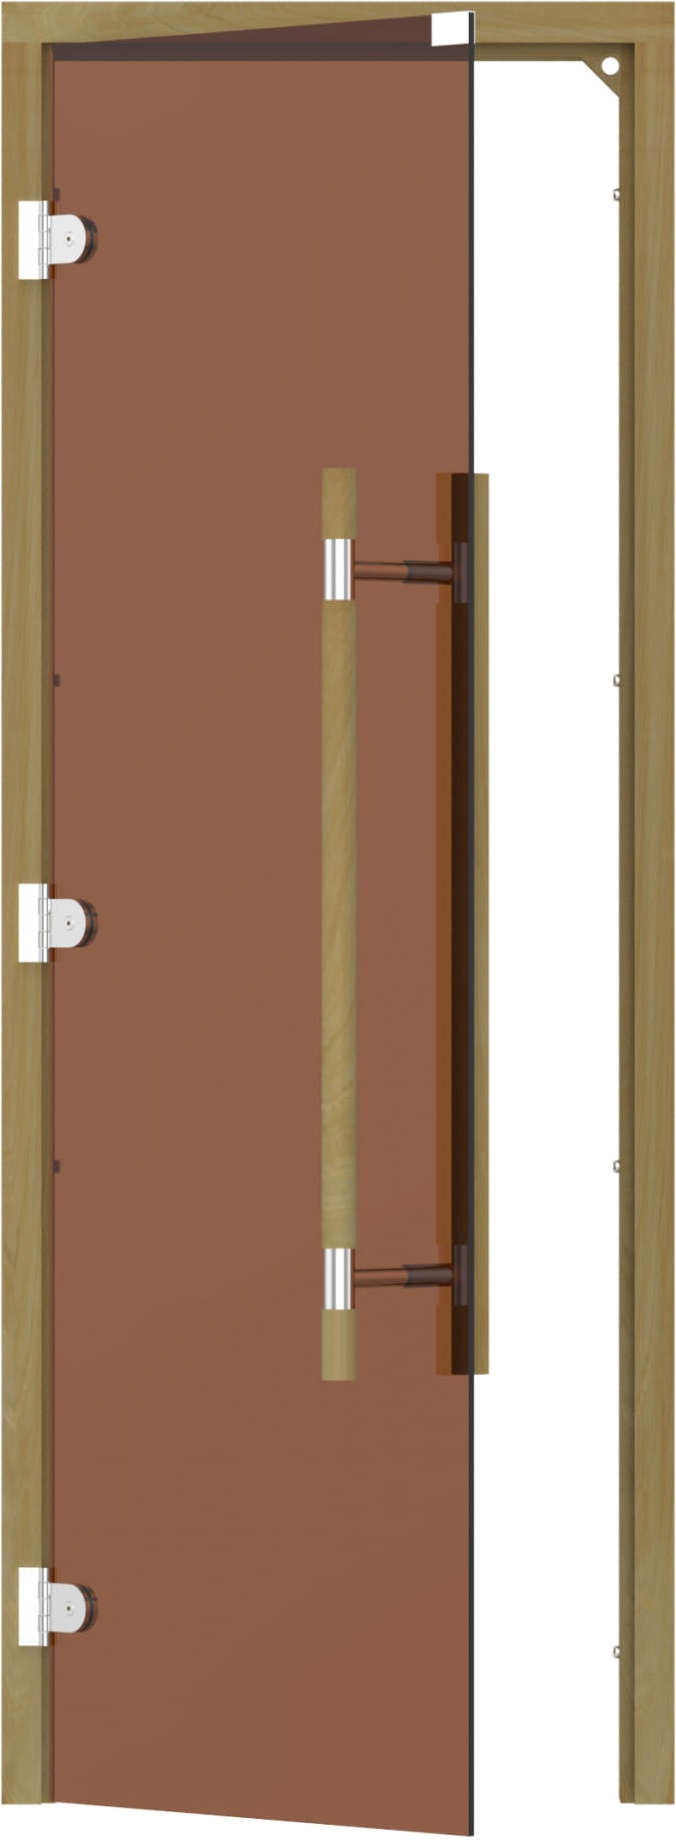 SAWO Межкомнатная дверь 7/19 левая 741-3SGD-L прямая ручка, арт. 24484 - фото №1